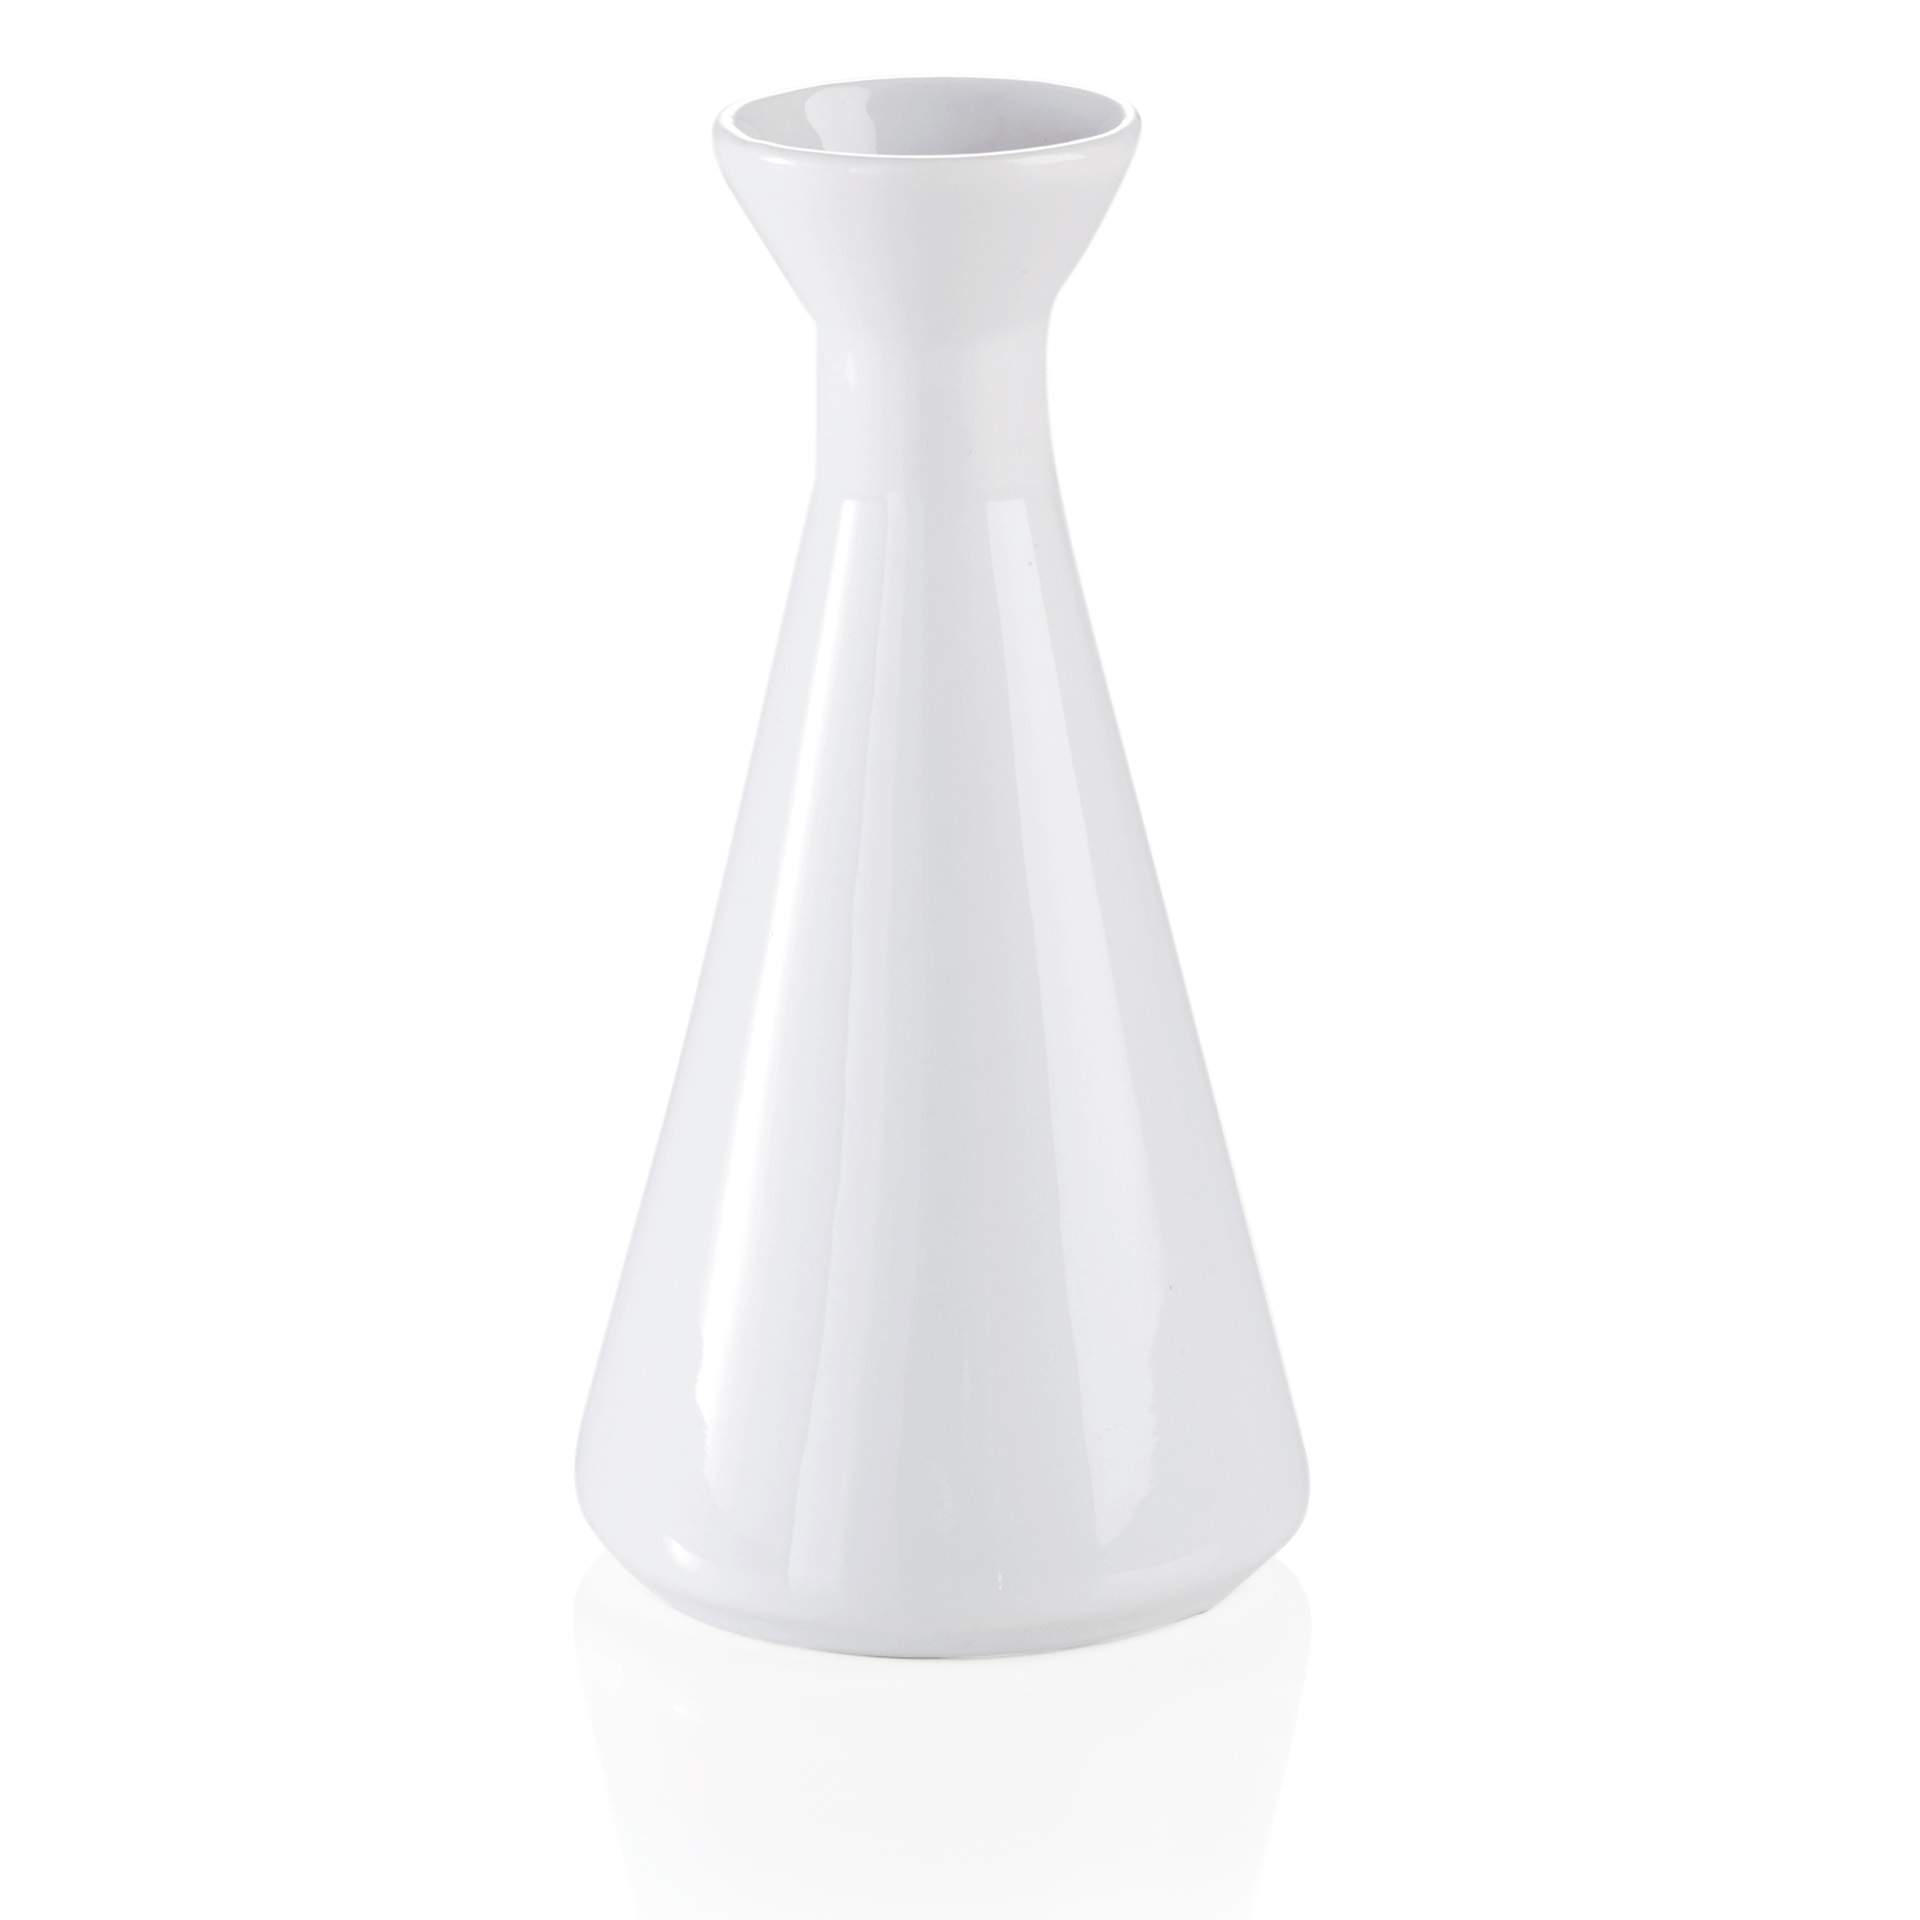 Vase - Abm. 14,5 cm - Ø oben 4,2 cm - Porzellan - 4984150-A